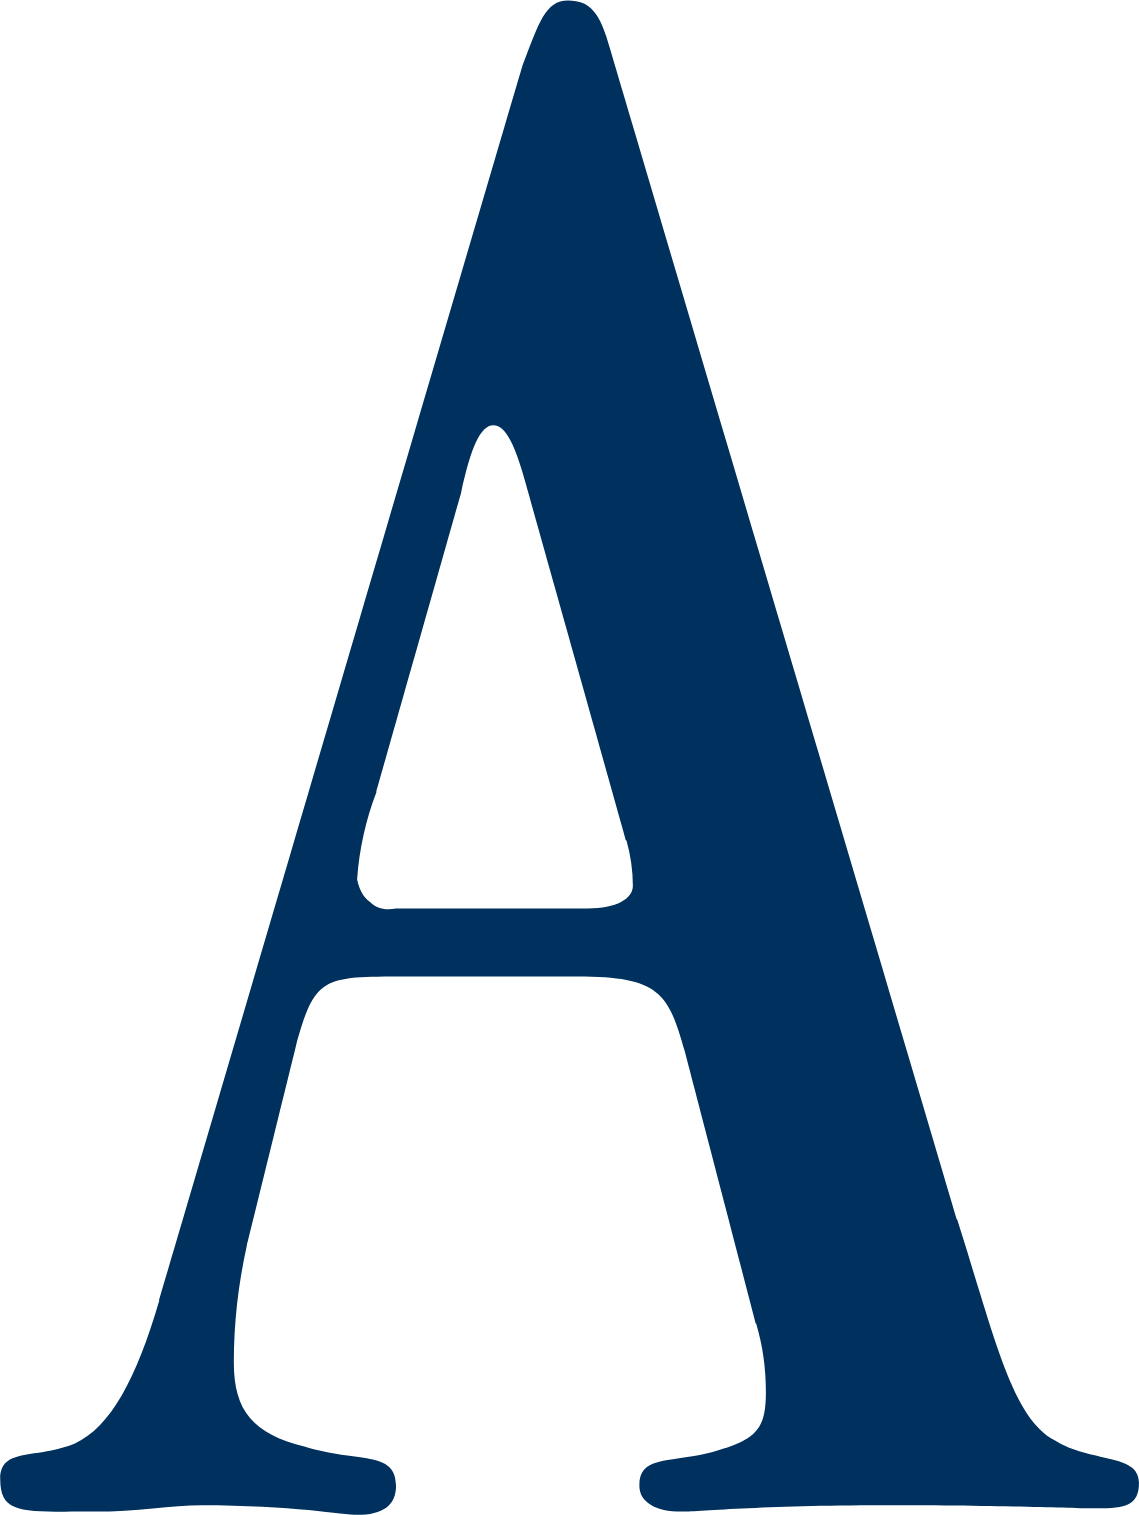 Ashmore Group logo (PNG transparent)